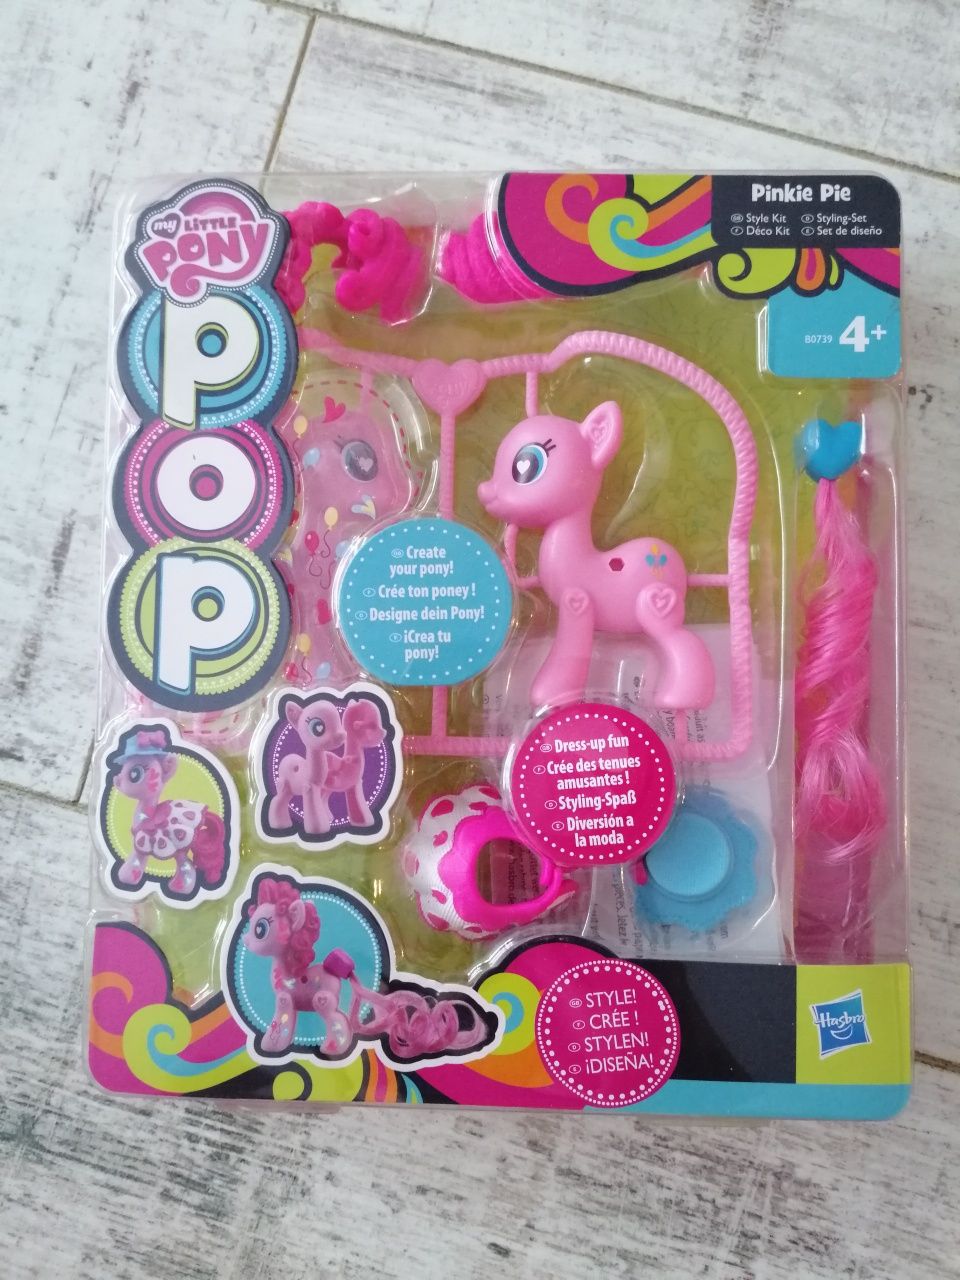 Nowa zabawka stwórz własnego kucyka My Little Pony Pop Pinkie Pie 
Zmi